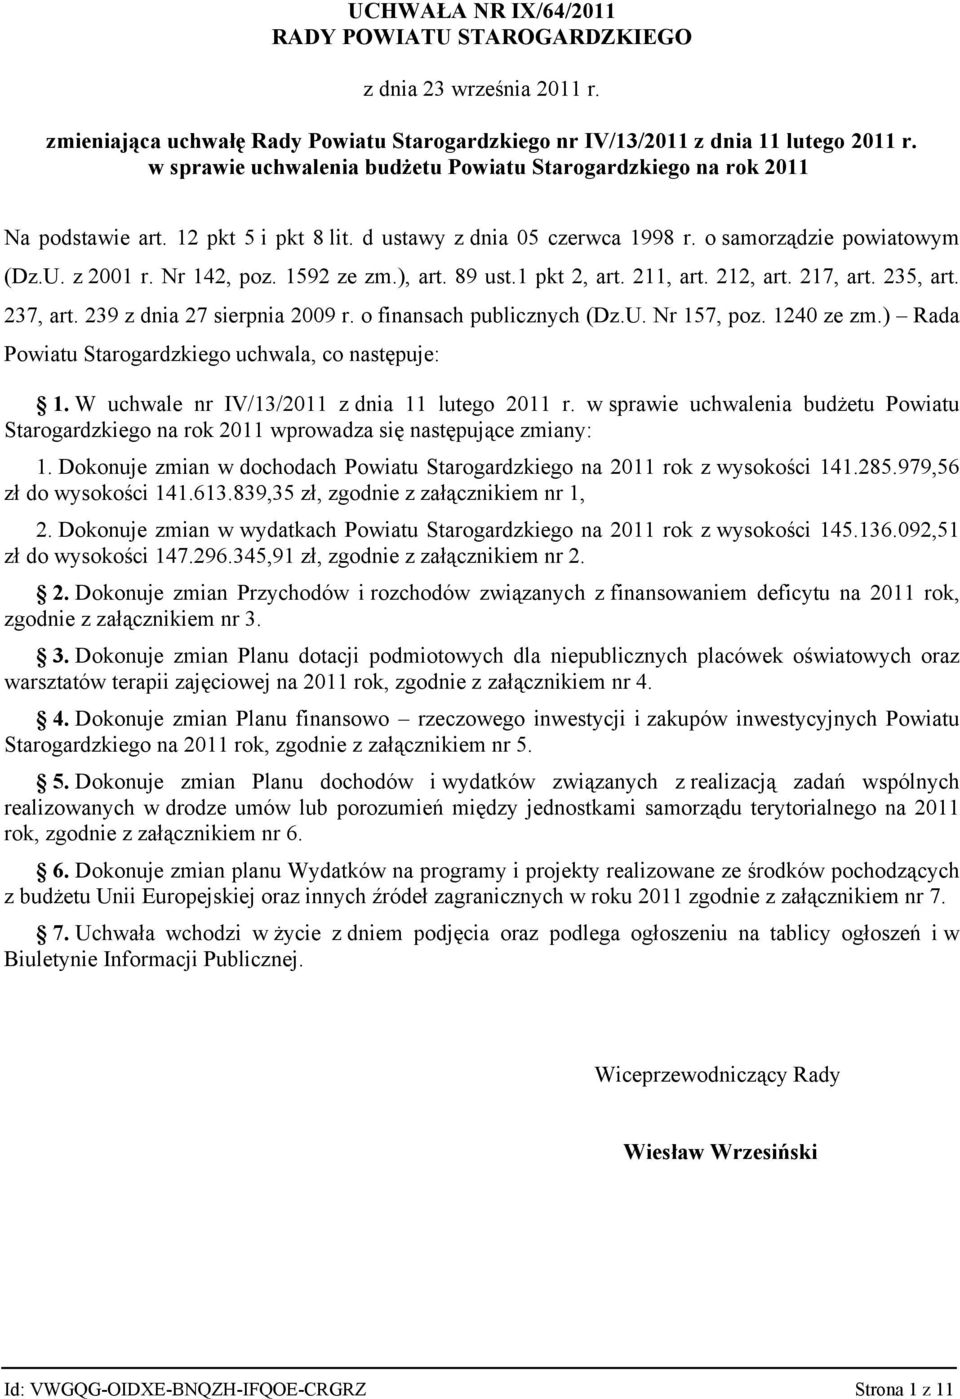 237, art. 239 z dnia 27 sierpnia 2009 r. o finansach publicznych (Dz.U. Nr 157, poz. 1240 ze zm.) Rada Powiatu Starogardzkiego uchwala, co następuje: 1.